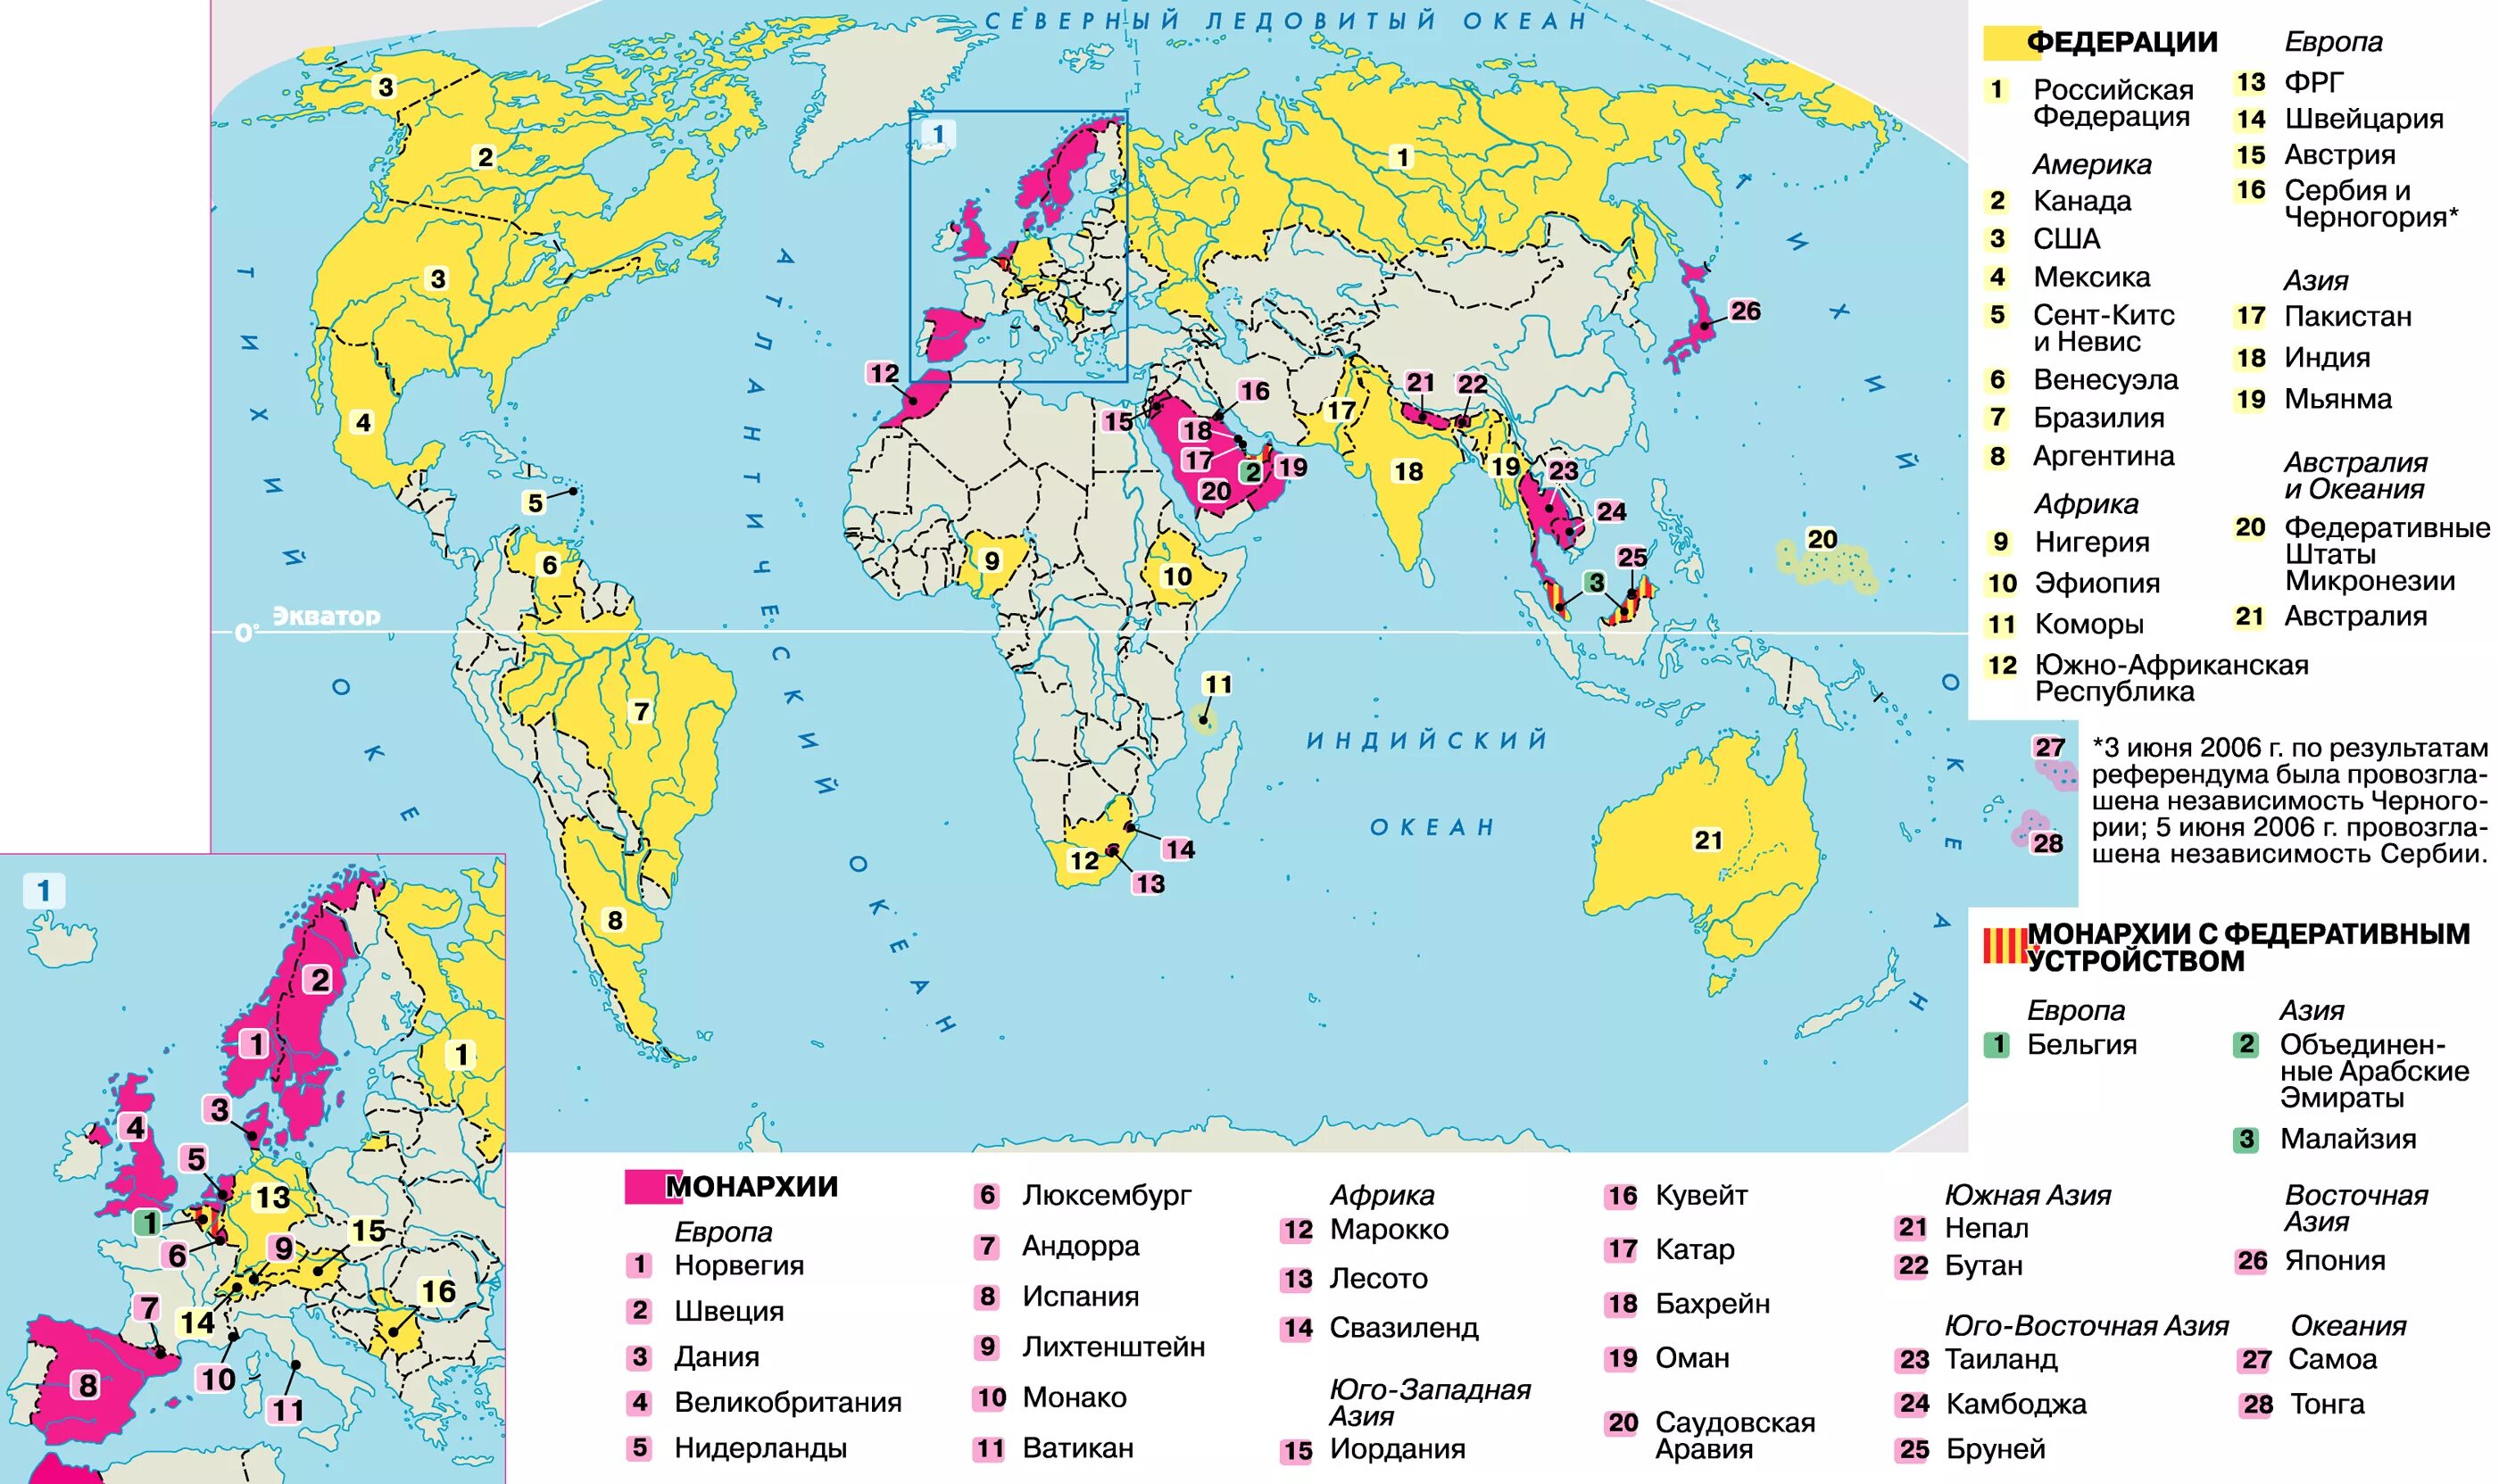 Страны с монархической формой правления политическая карта. Страны с ыелеративной ыориоц правления. 3 федерации в мире